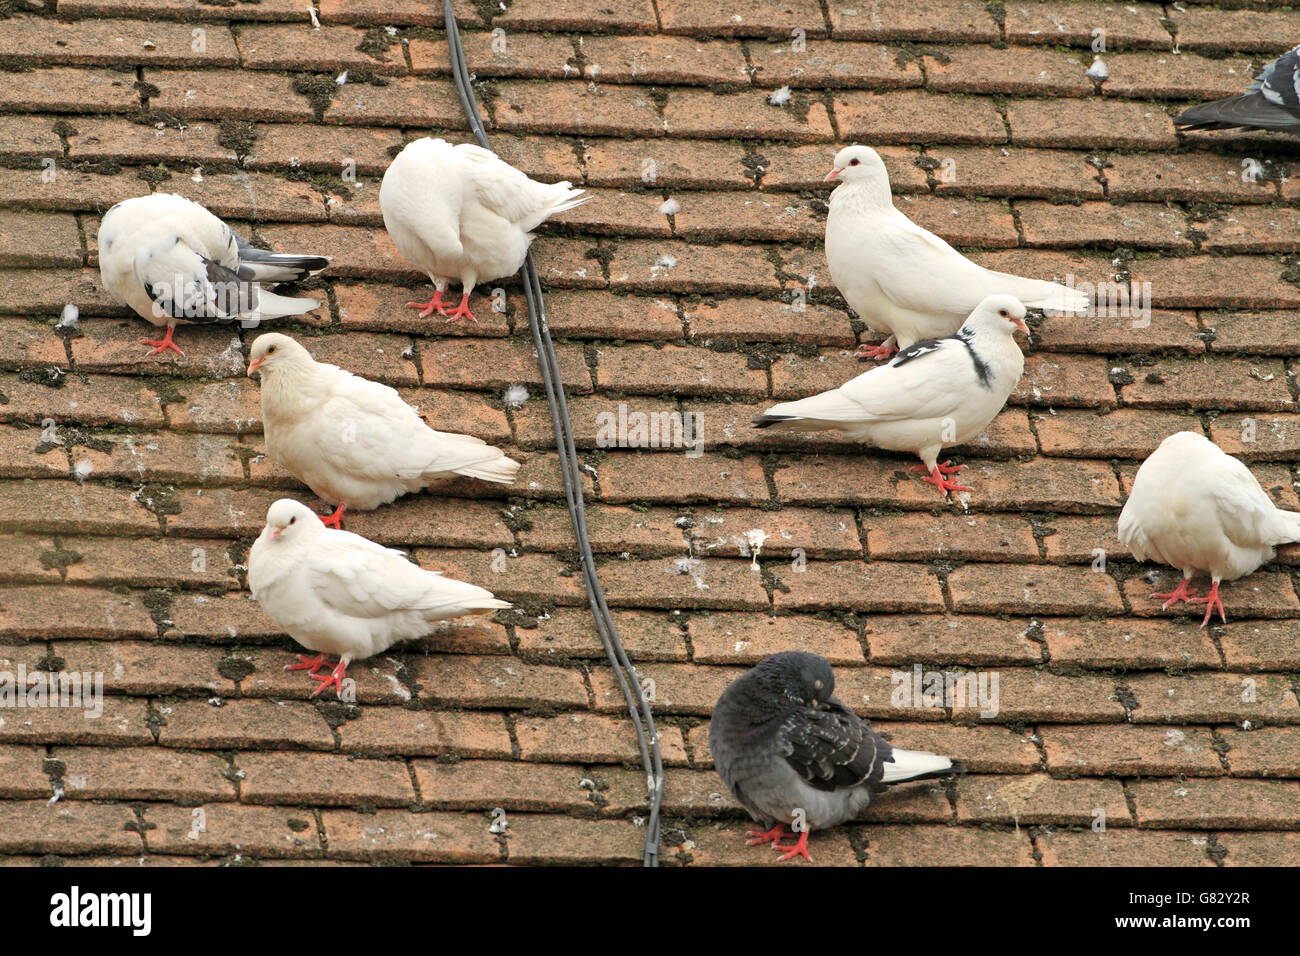 Tourterelles domestiques sur toit de maison, montrant des signes d'hybridation avec les pigeons sauvages locales Banque D'Images